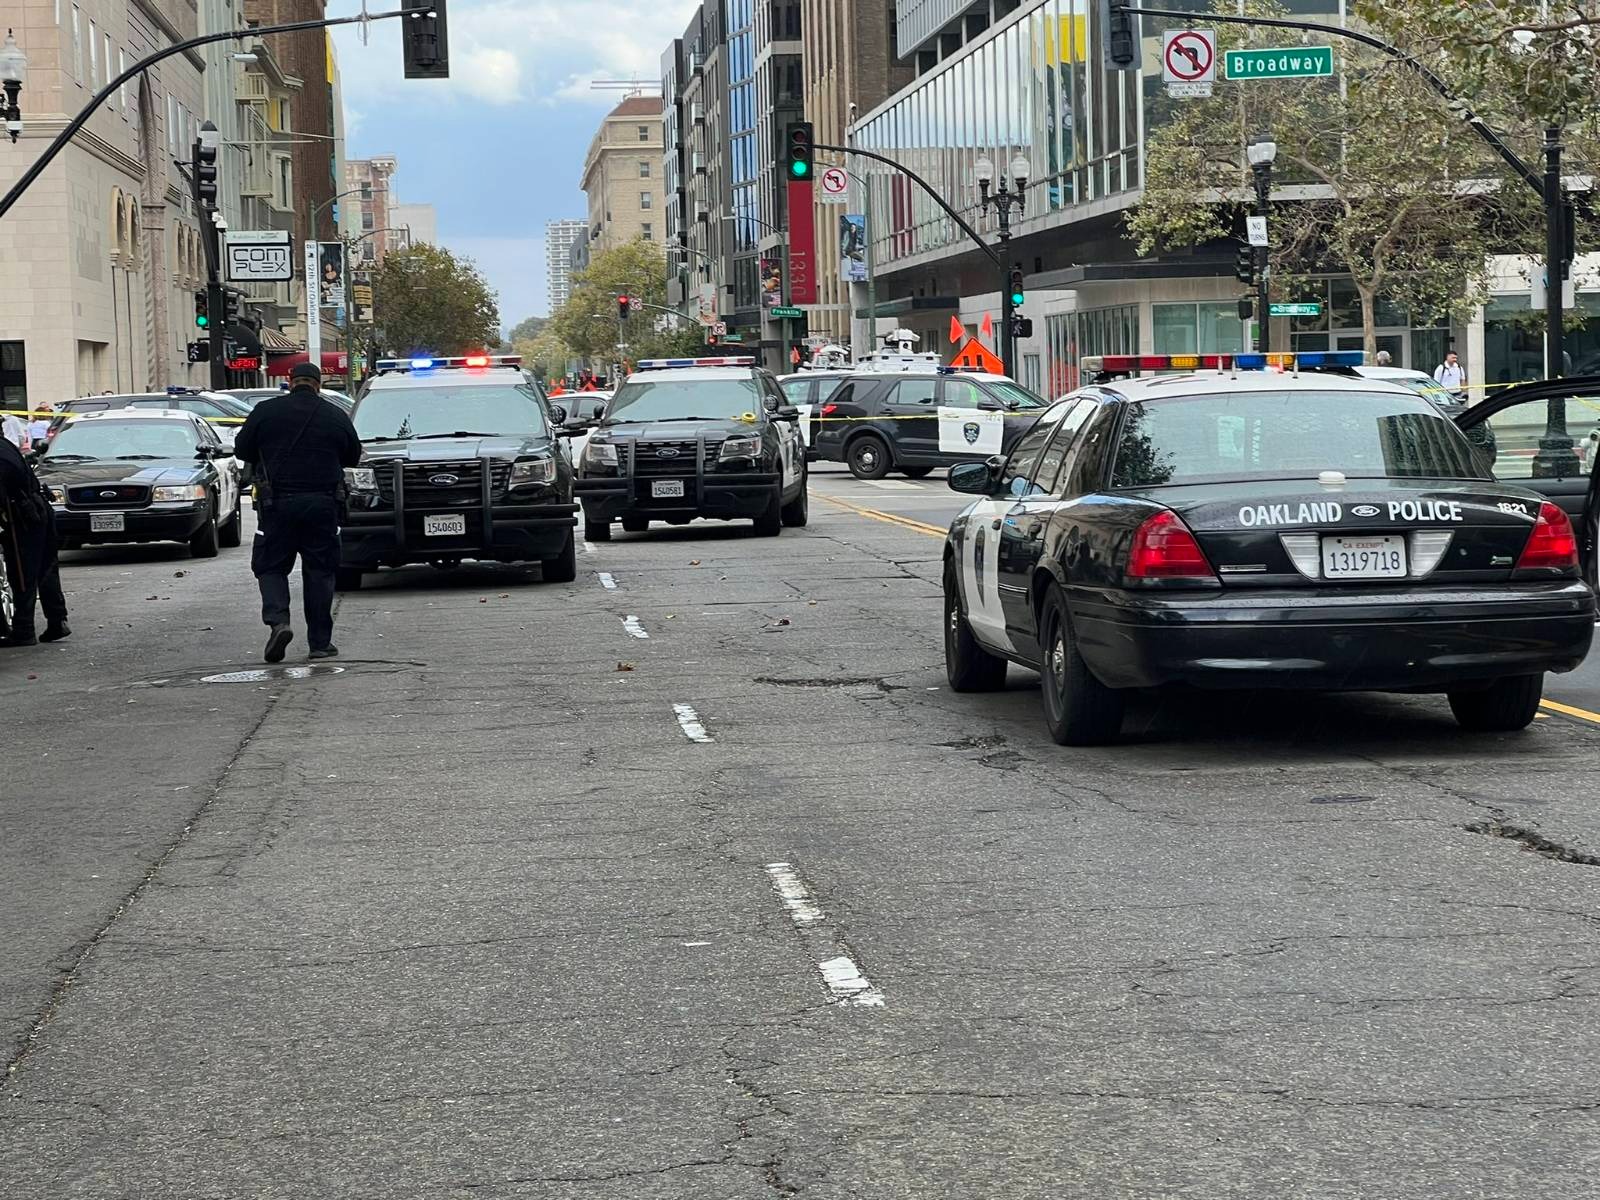 Foto referencial. Crédito: Twitter Departamento de policía de Oakland.